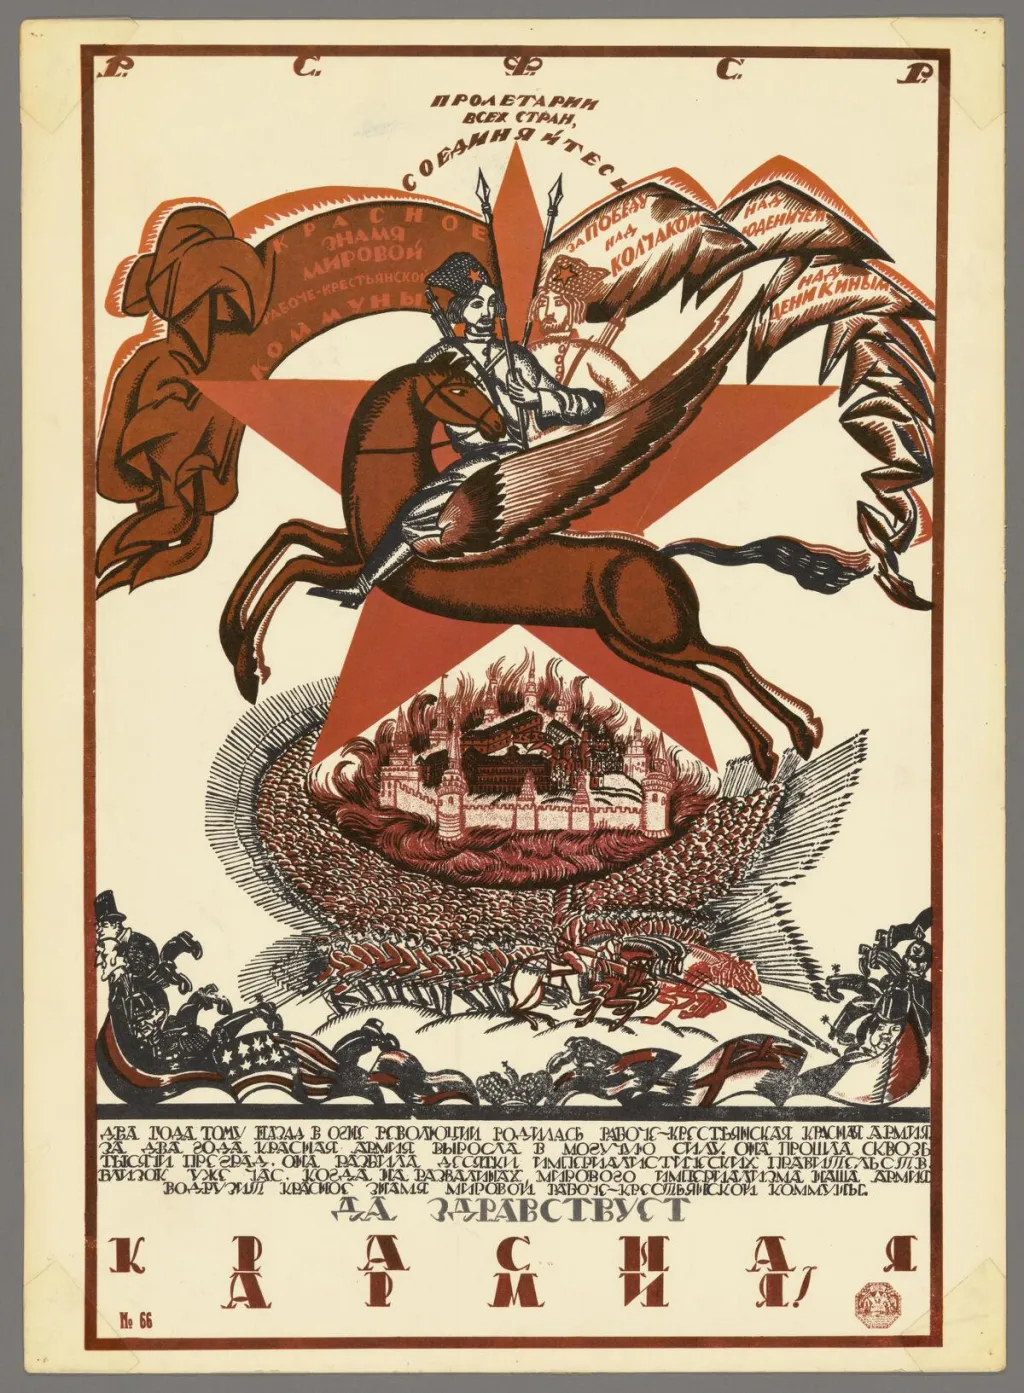 Plakát oslavující Rudou armádu je tvořený obrazy, které jsou do značné míry převzat z ruské pravoslavné eschatologické ikonografie - propagoval ale obranu ateistického státu